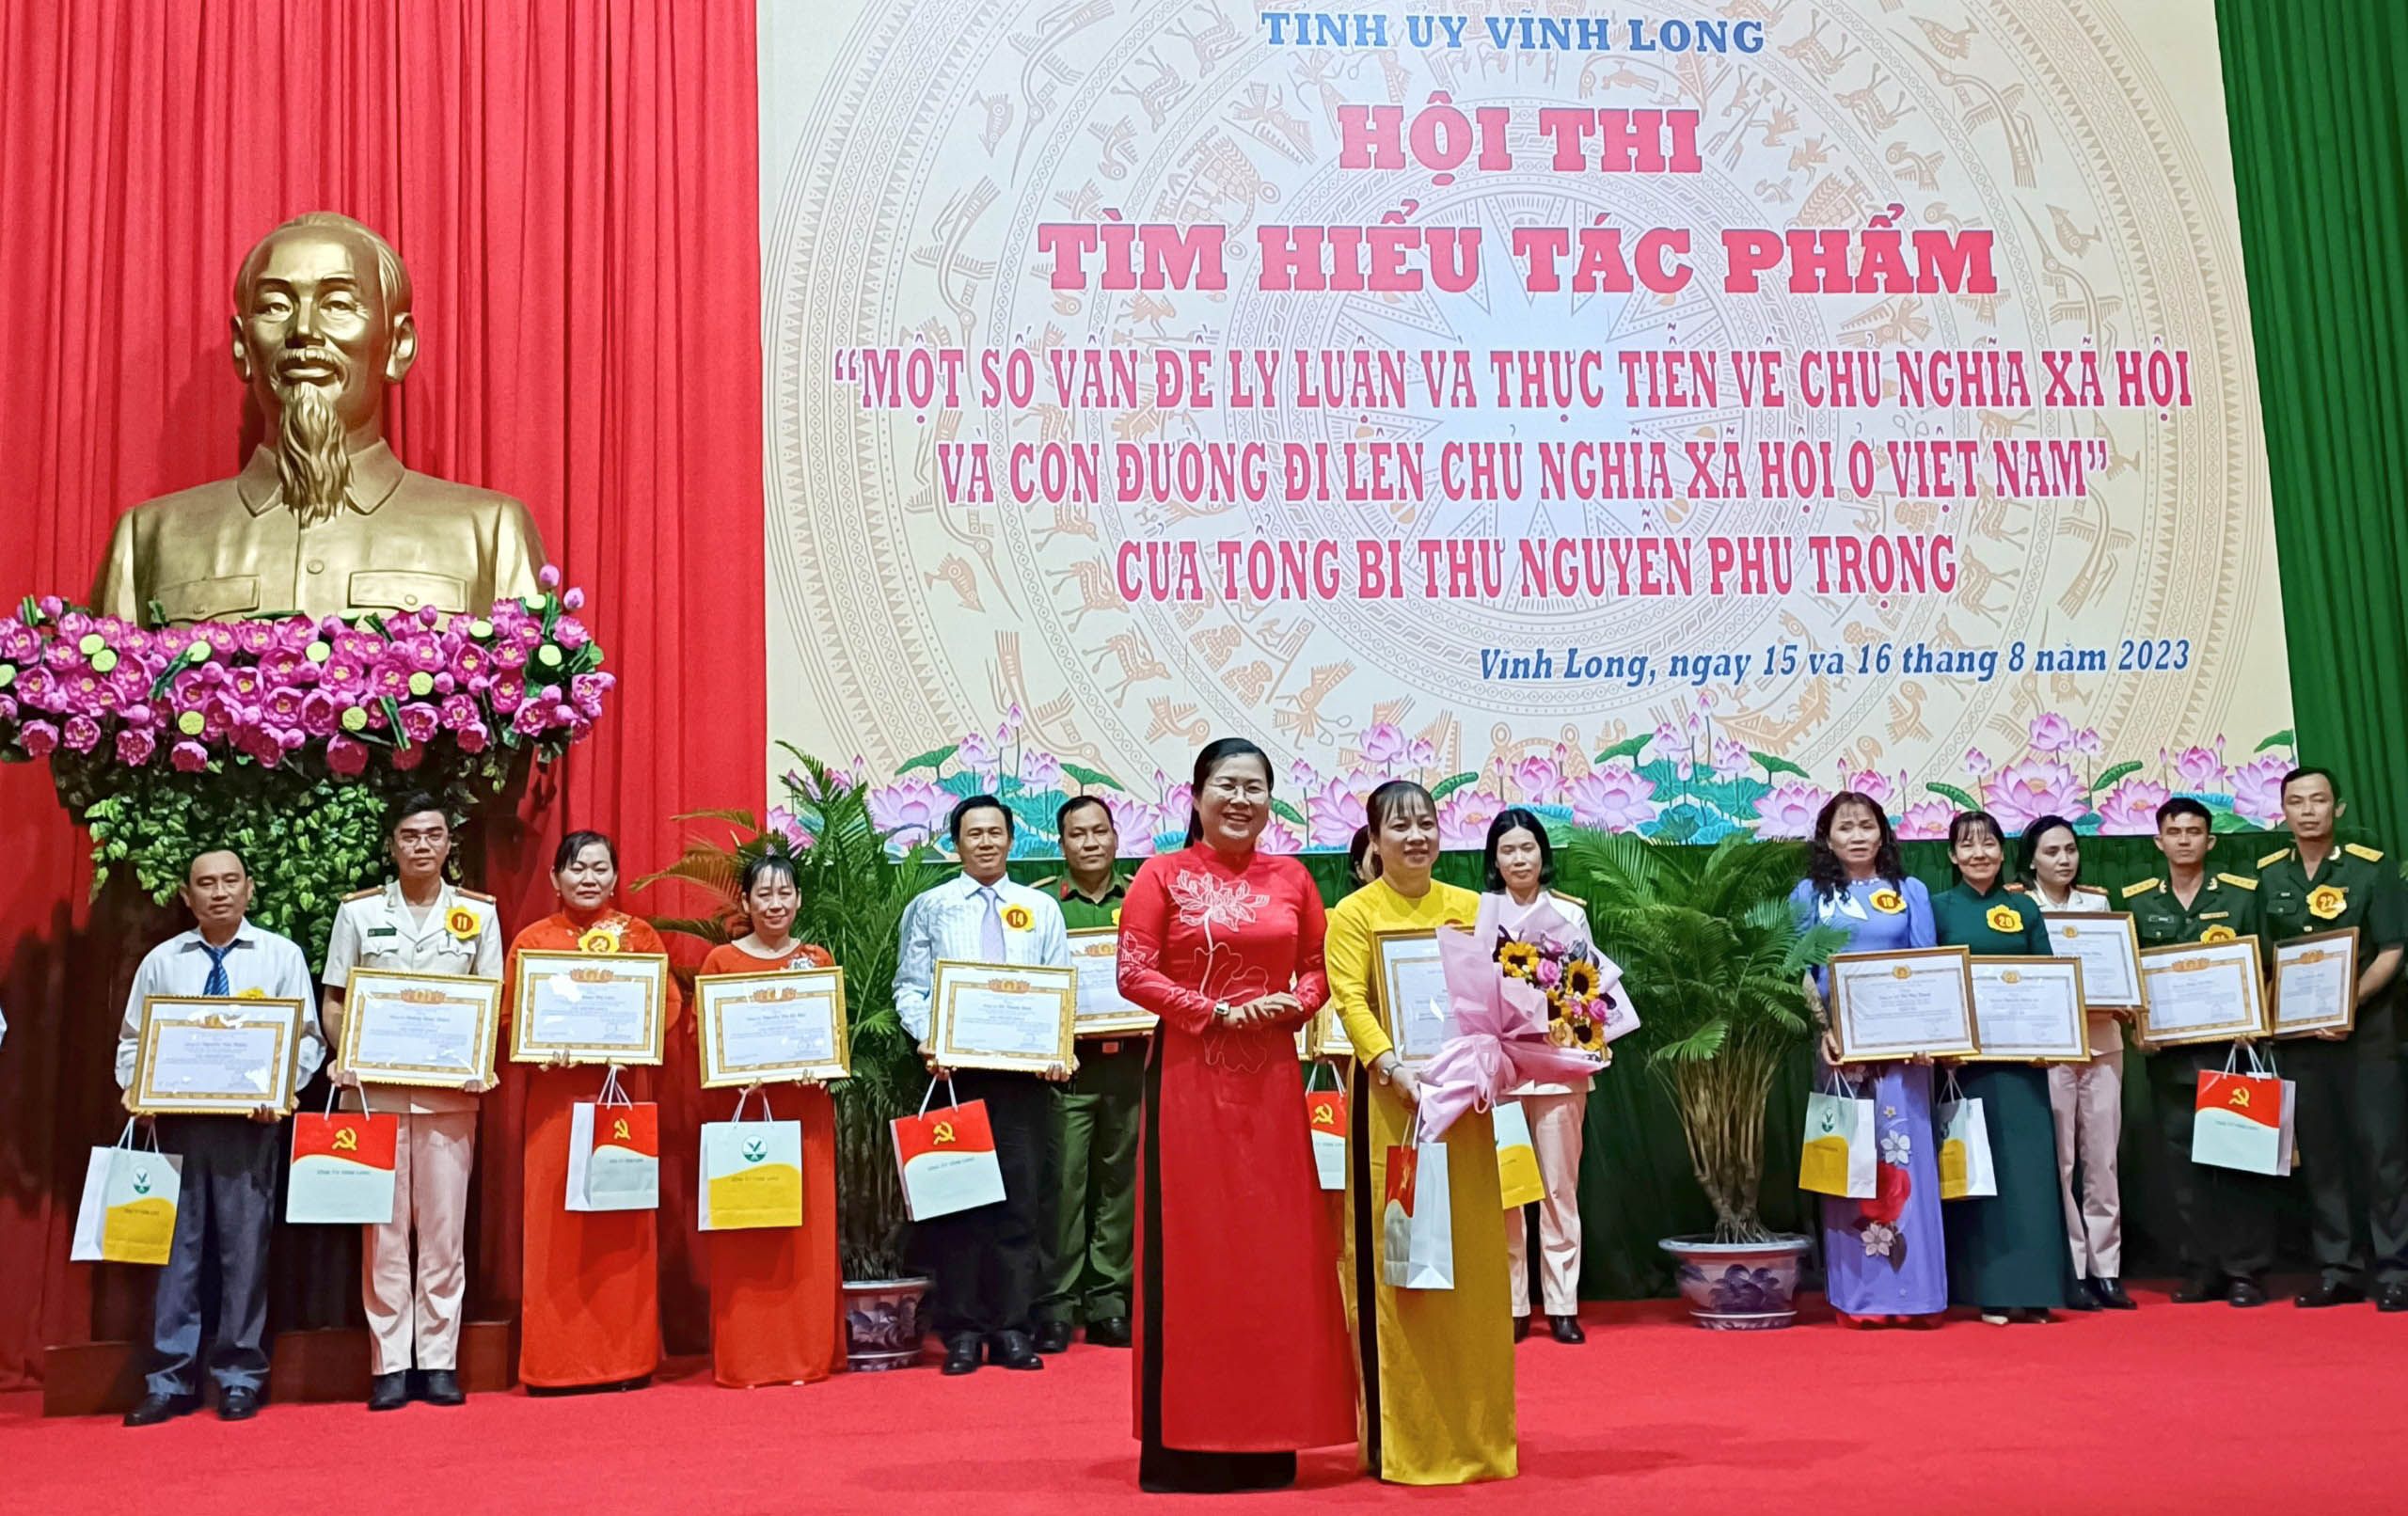 Vĩnh Long: Trao giải hội thi tìm hiểu tác phẩm của Tổng Bí thư Nguyễn Phú Trọng